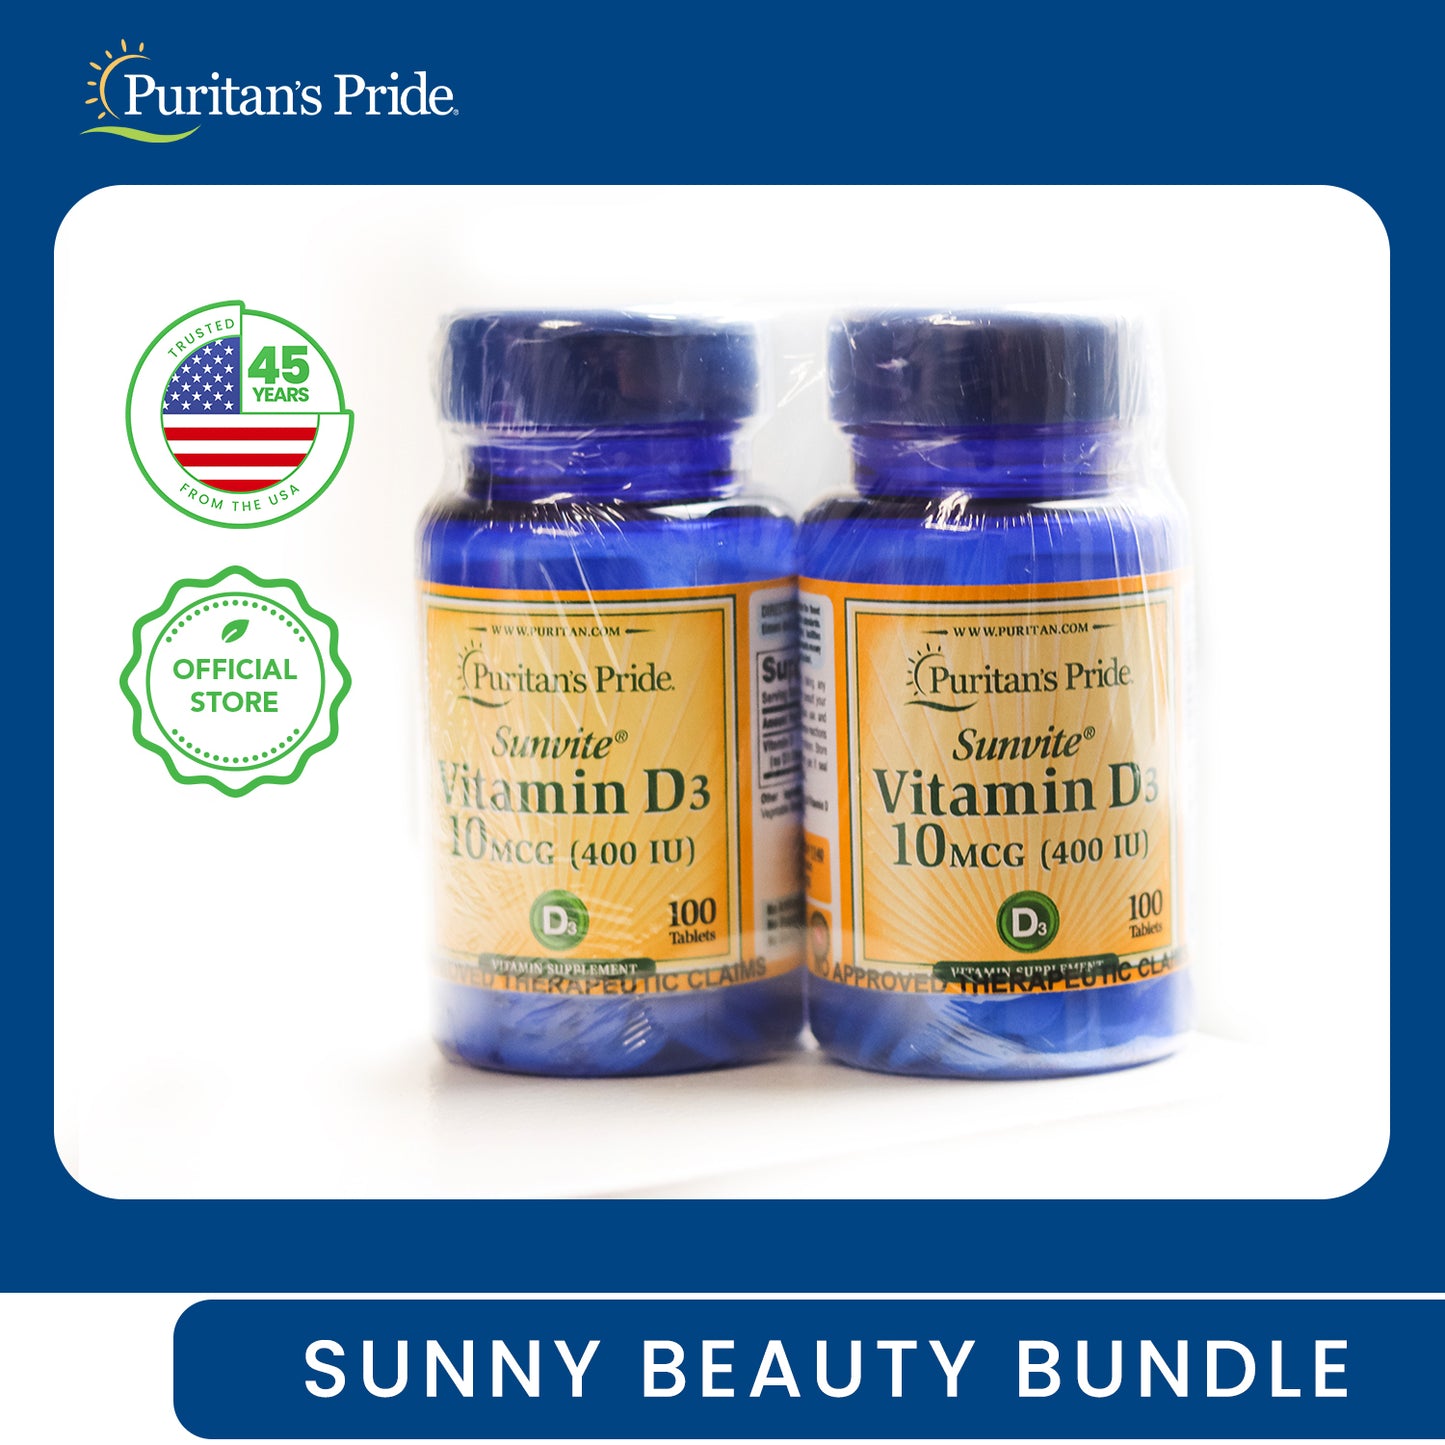 Sunny Beauty Bundle (Vitamin D3 400iu 100 tablets  + Vitamin D3 400iu 100 tablets)